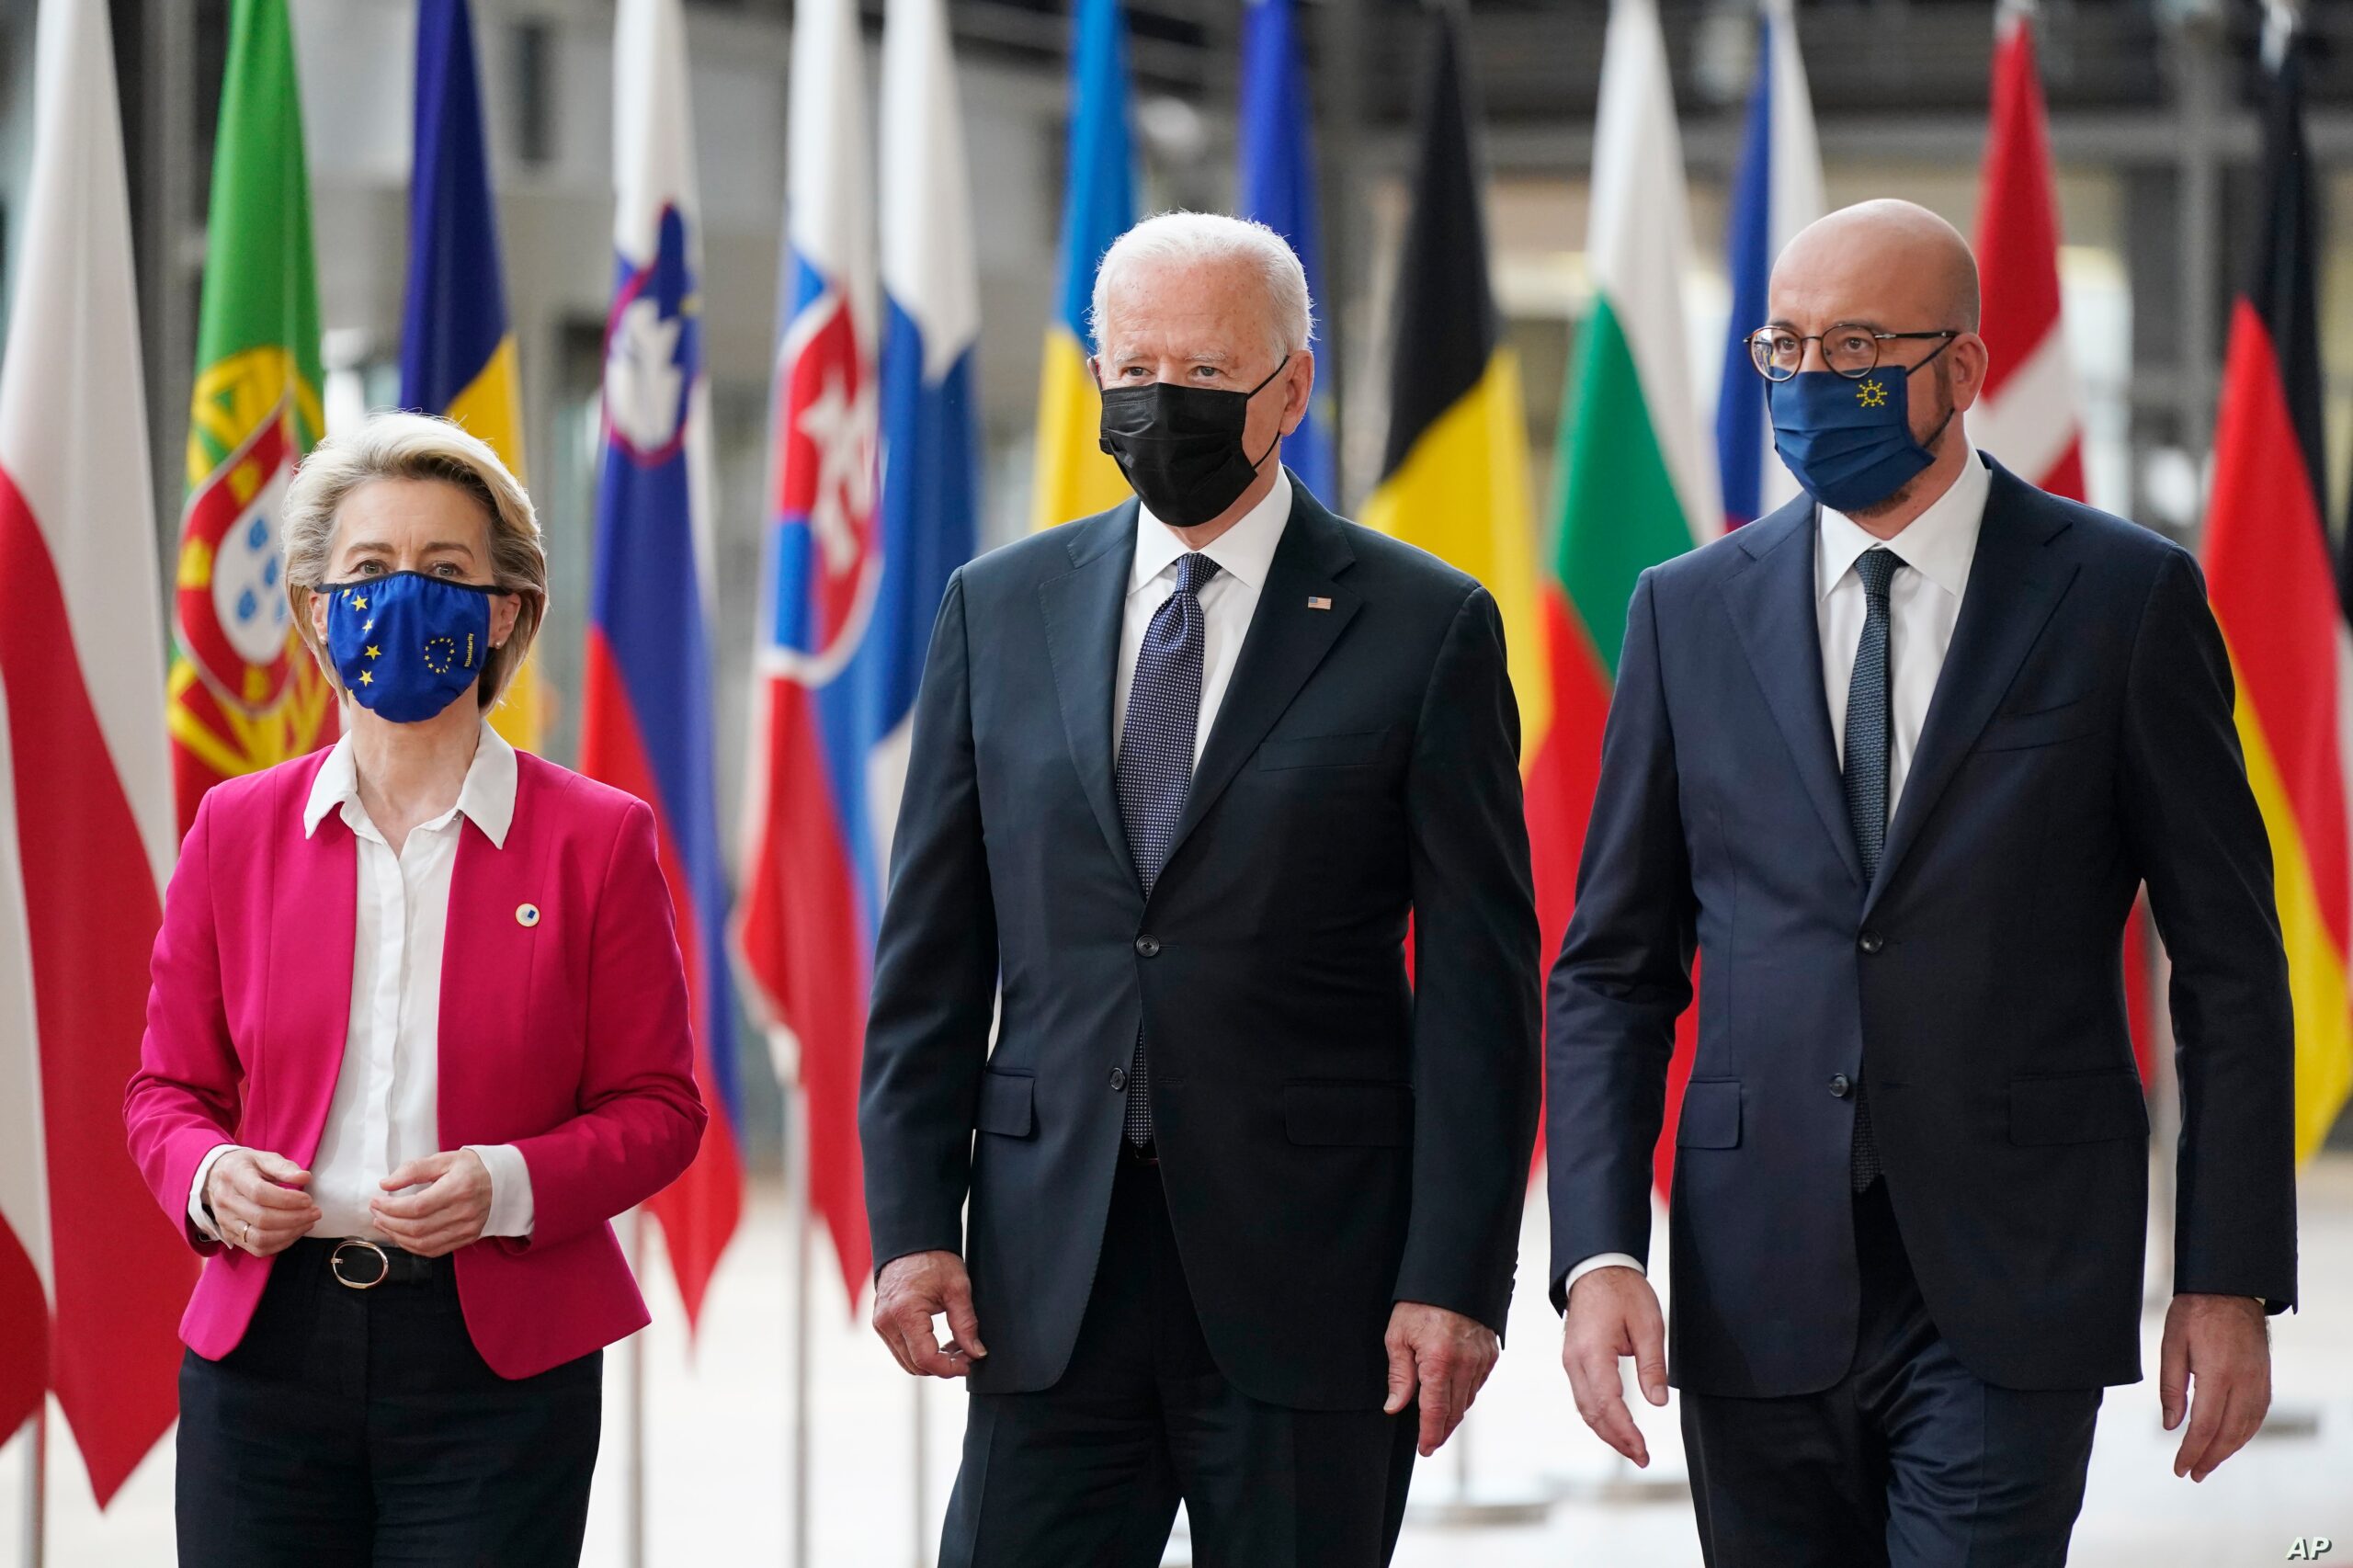 President Joe Biden, center, walks with European Council President Charles Michel, right, and European Commission President Ursula von der Leyen